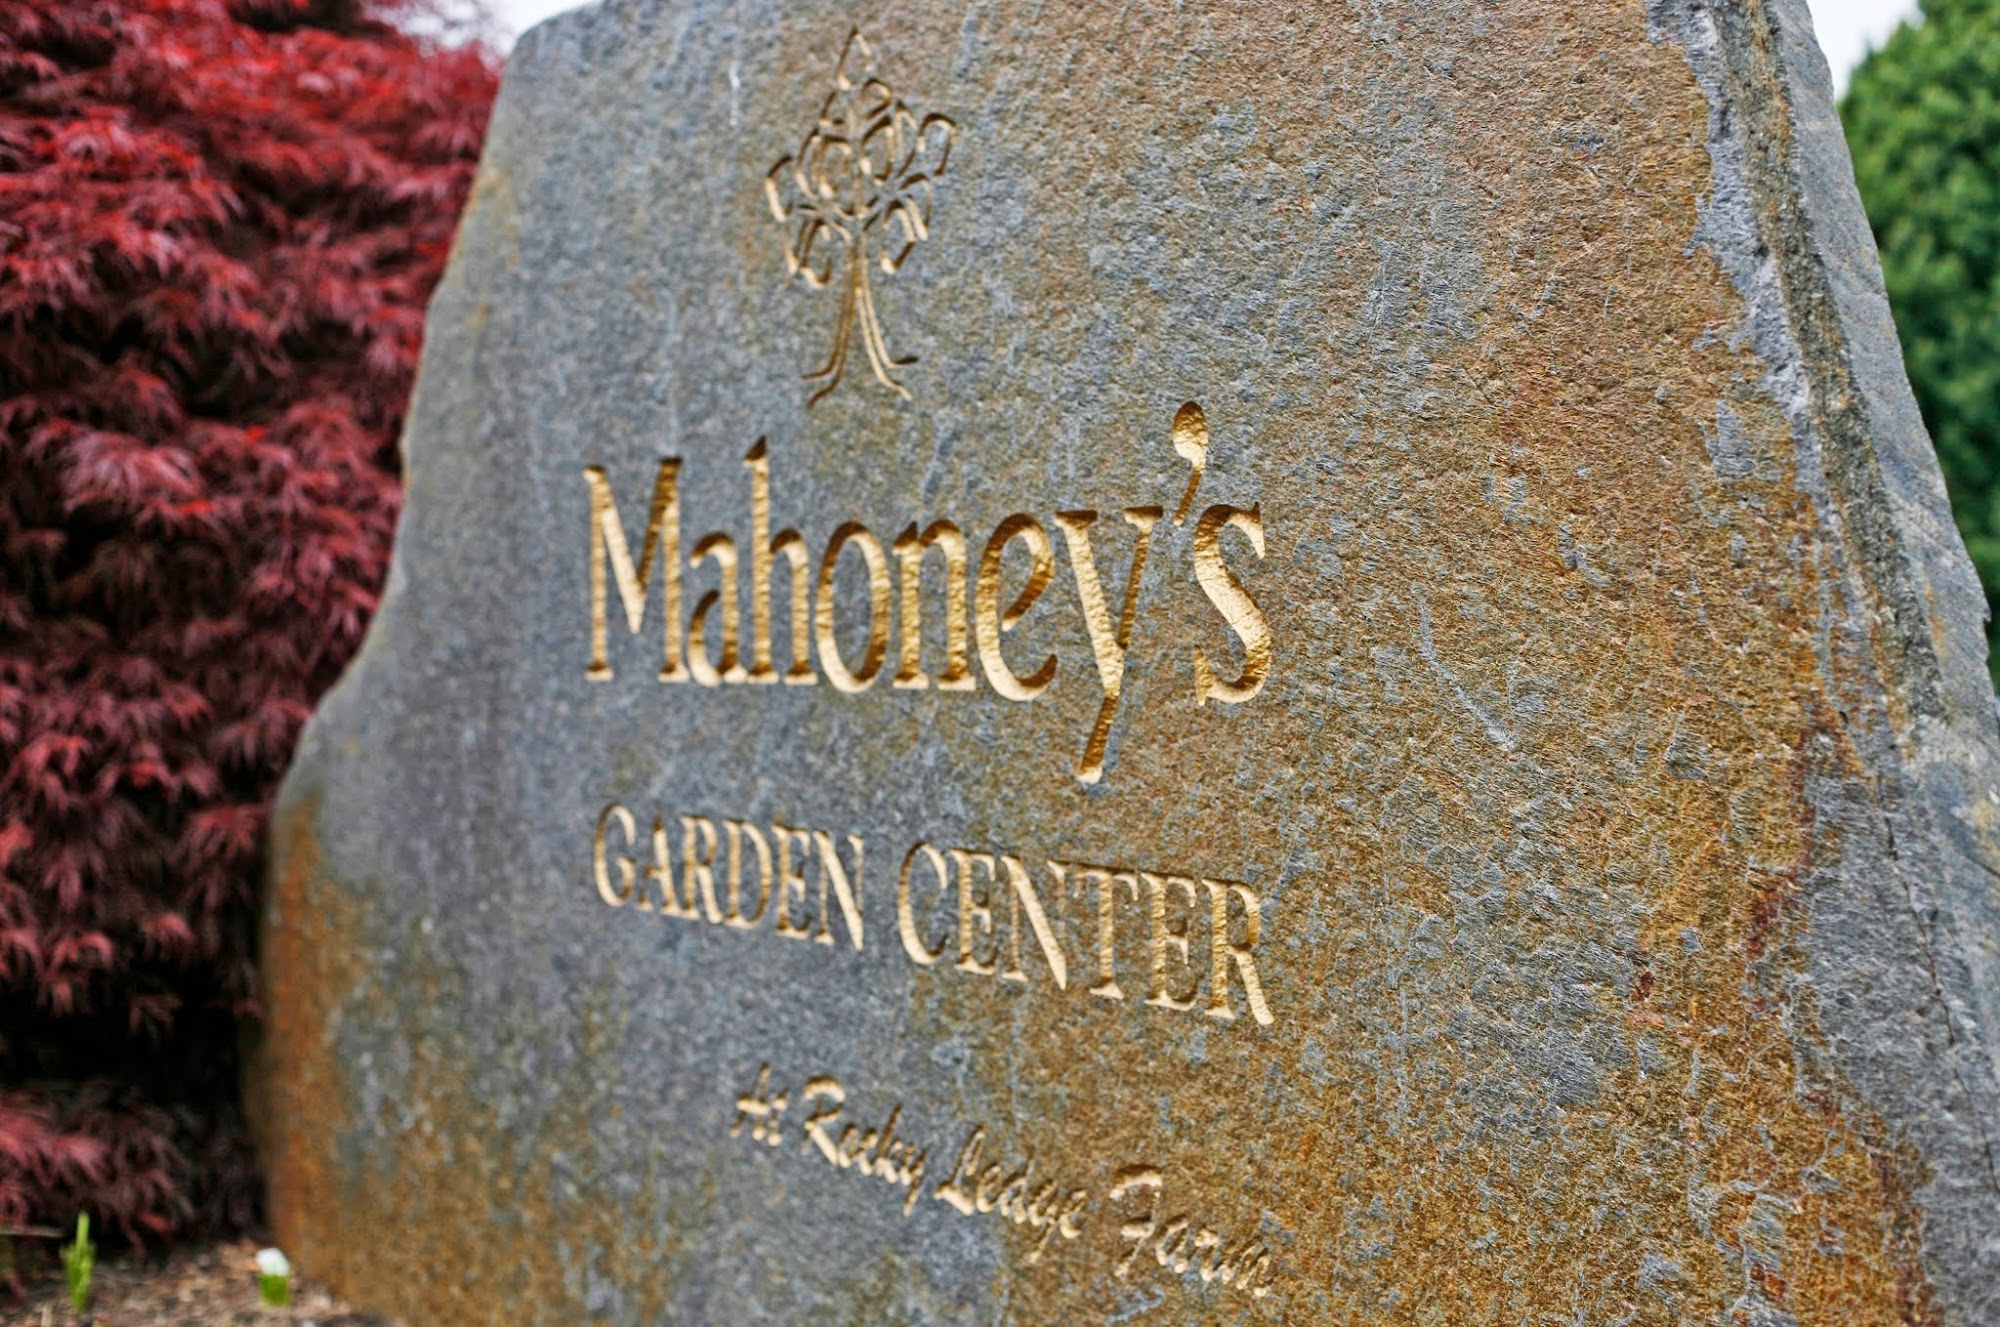 Mahoney's Garden Center